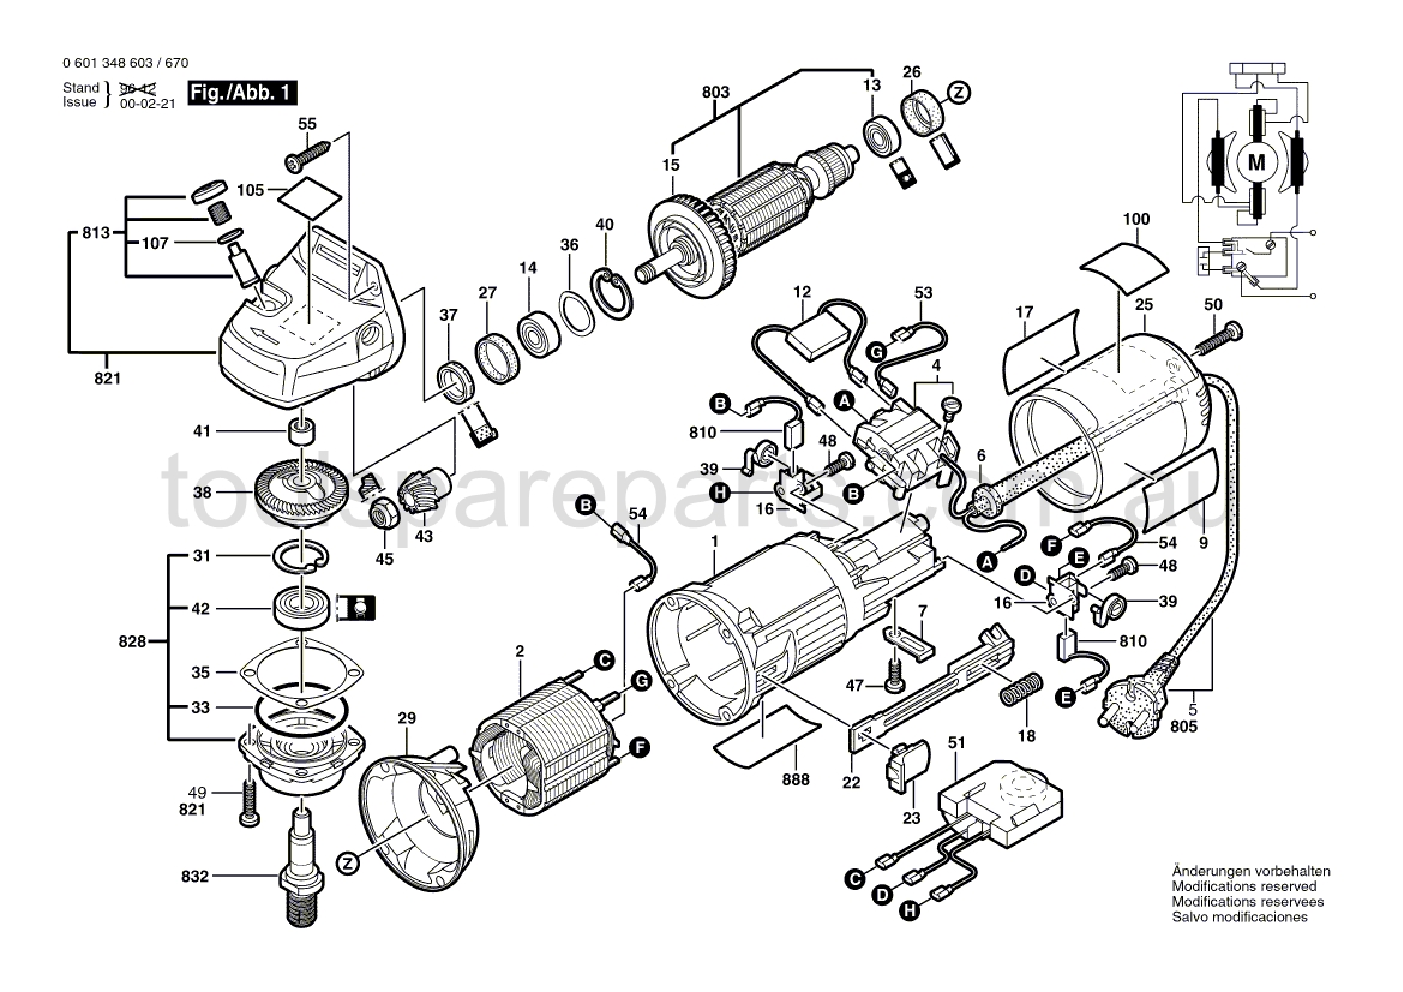 Bosch GWS 9-125 C 0601348637  Diagram 1